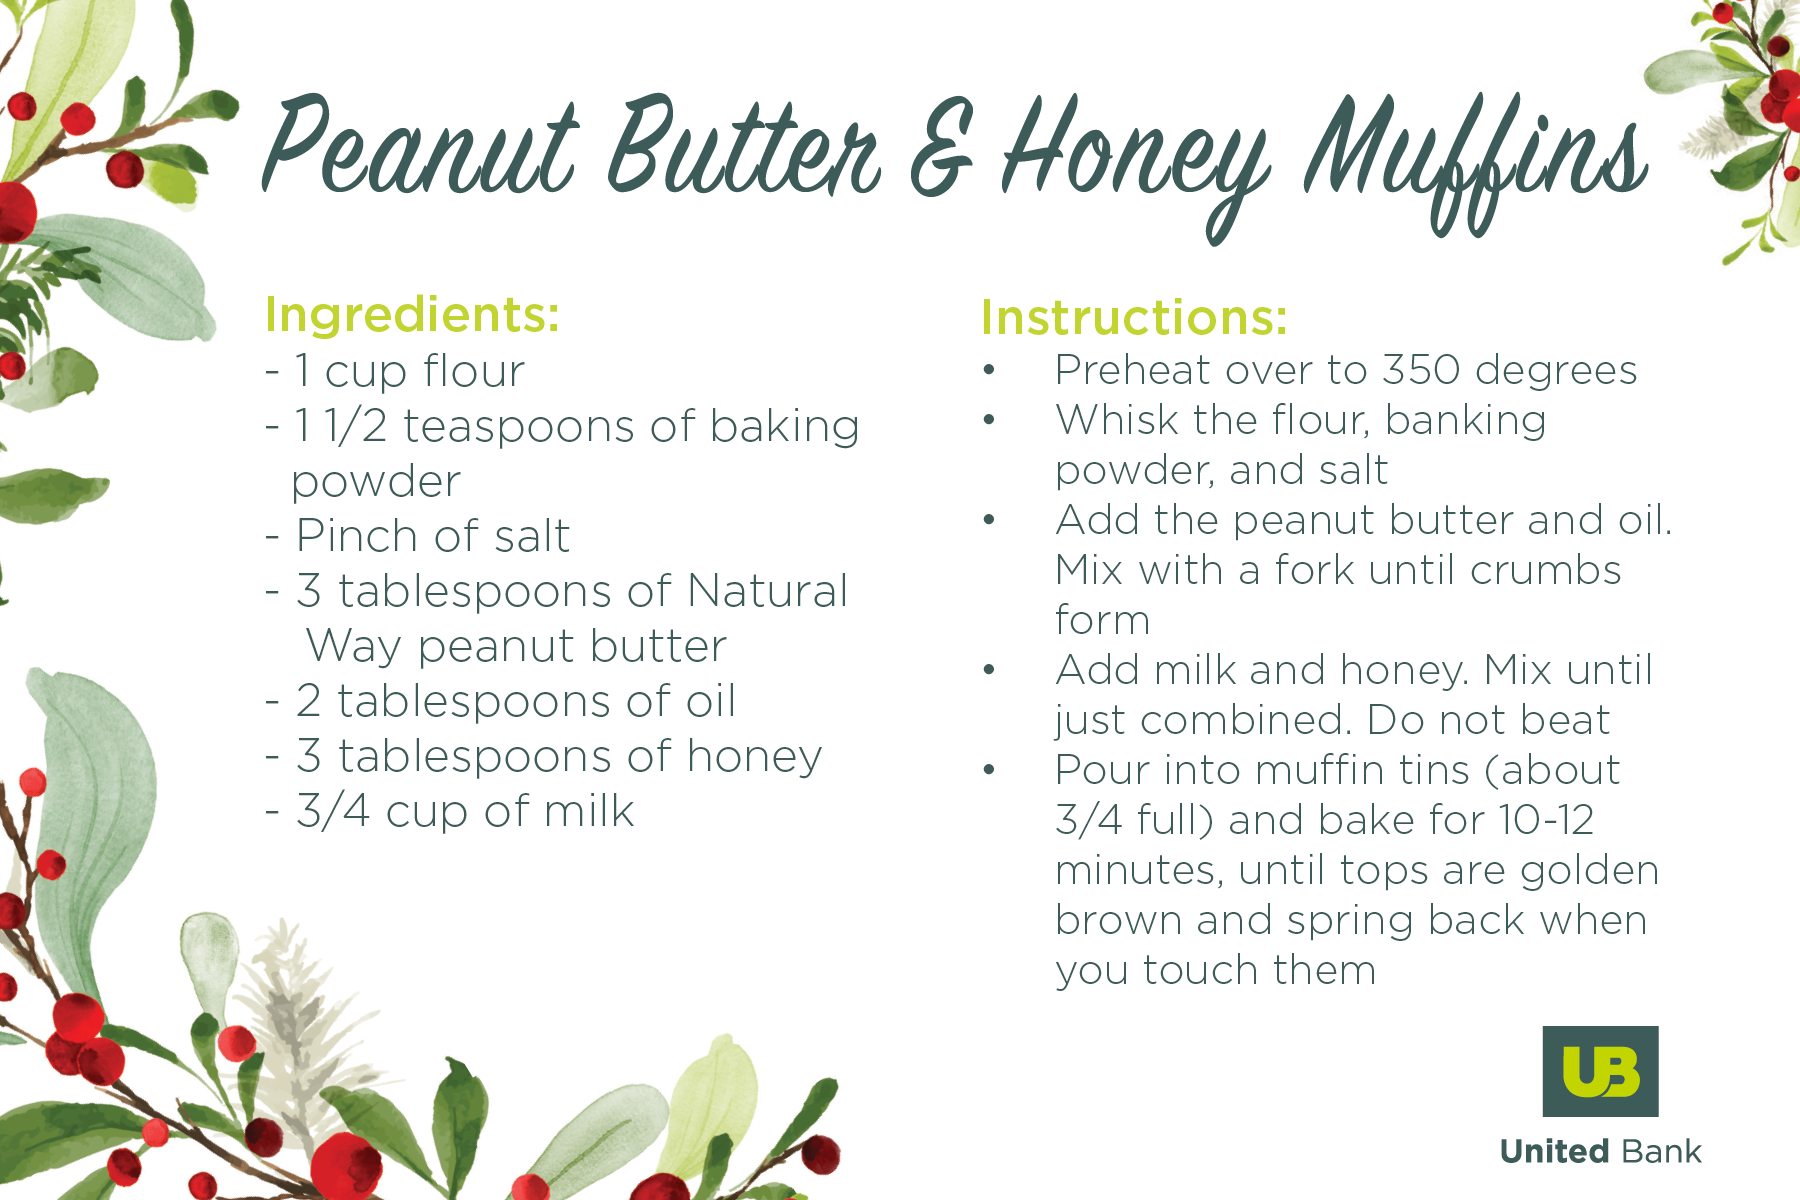 Peanut Butter & Honey Muffins Recipe Card 